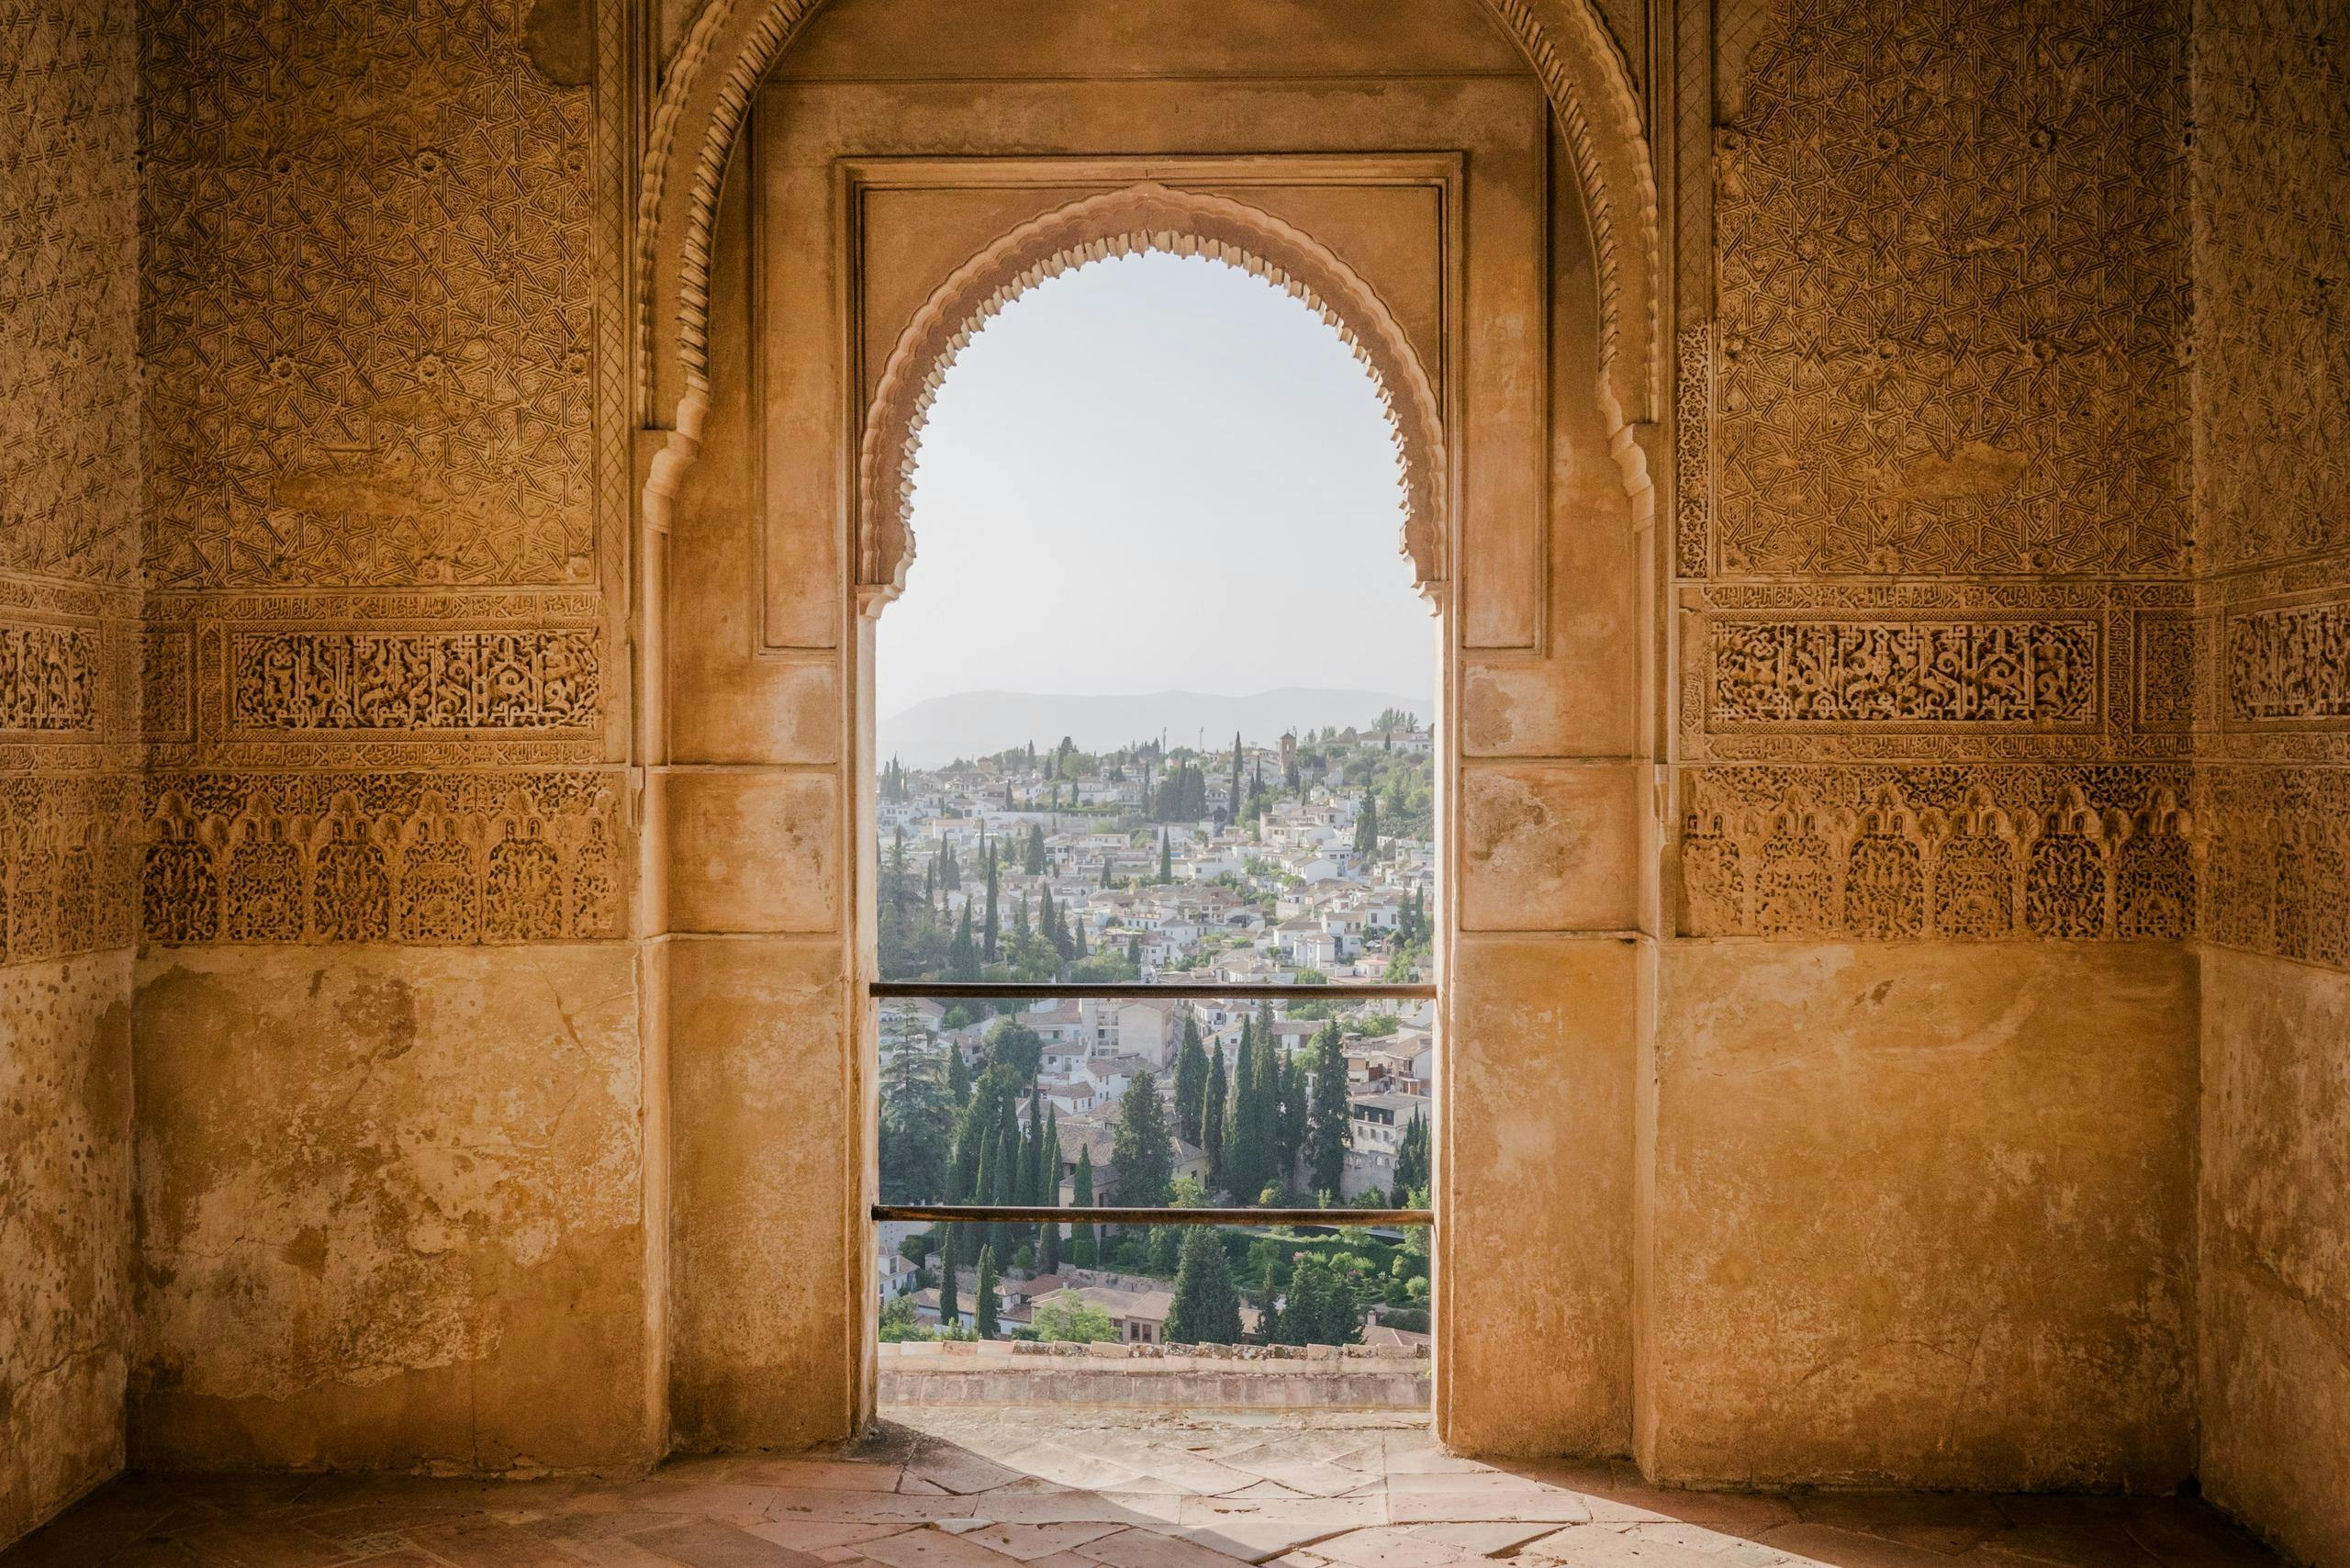 Alhambra-Tickets und Audioführung